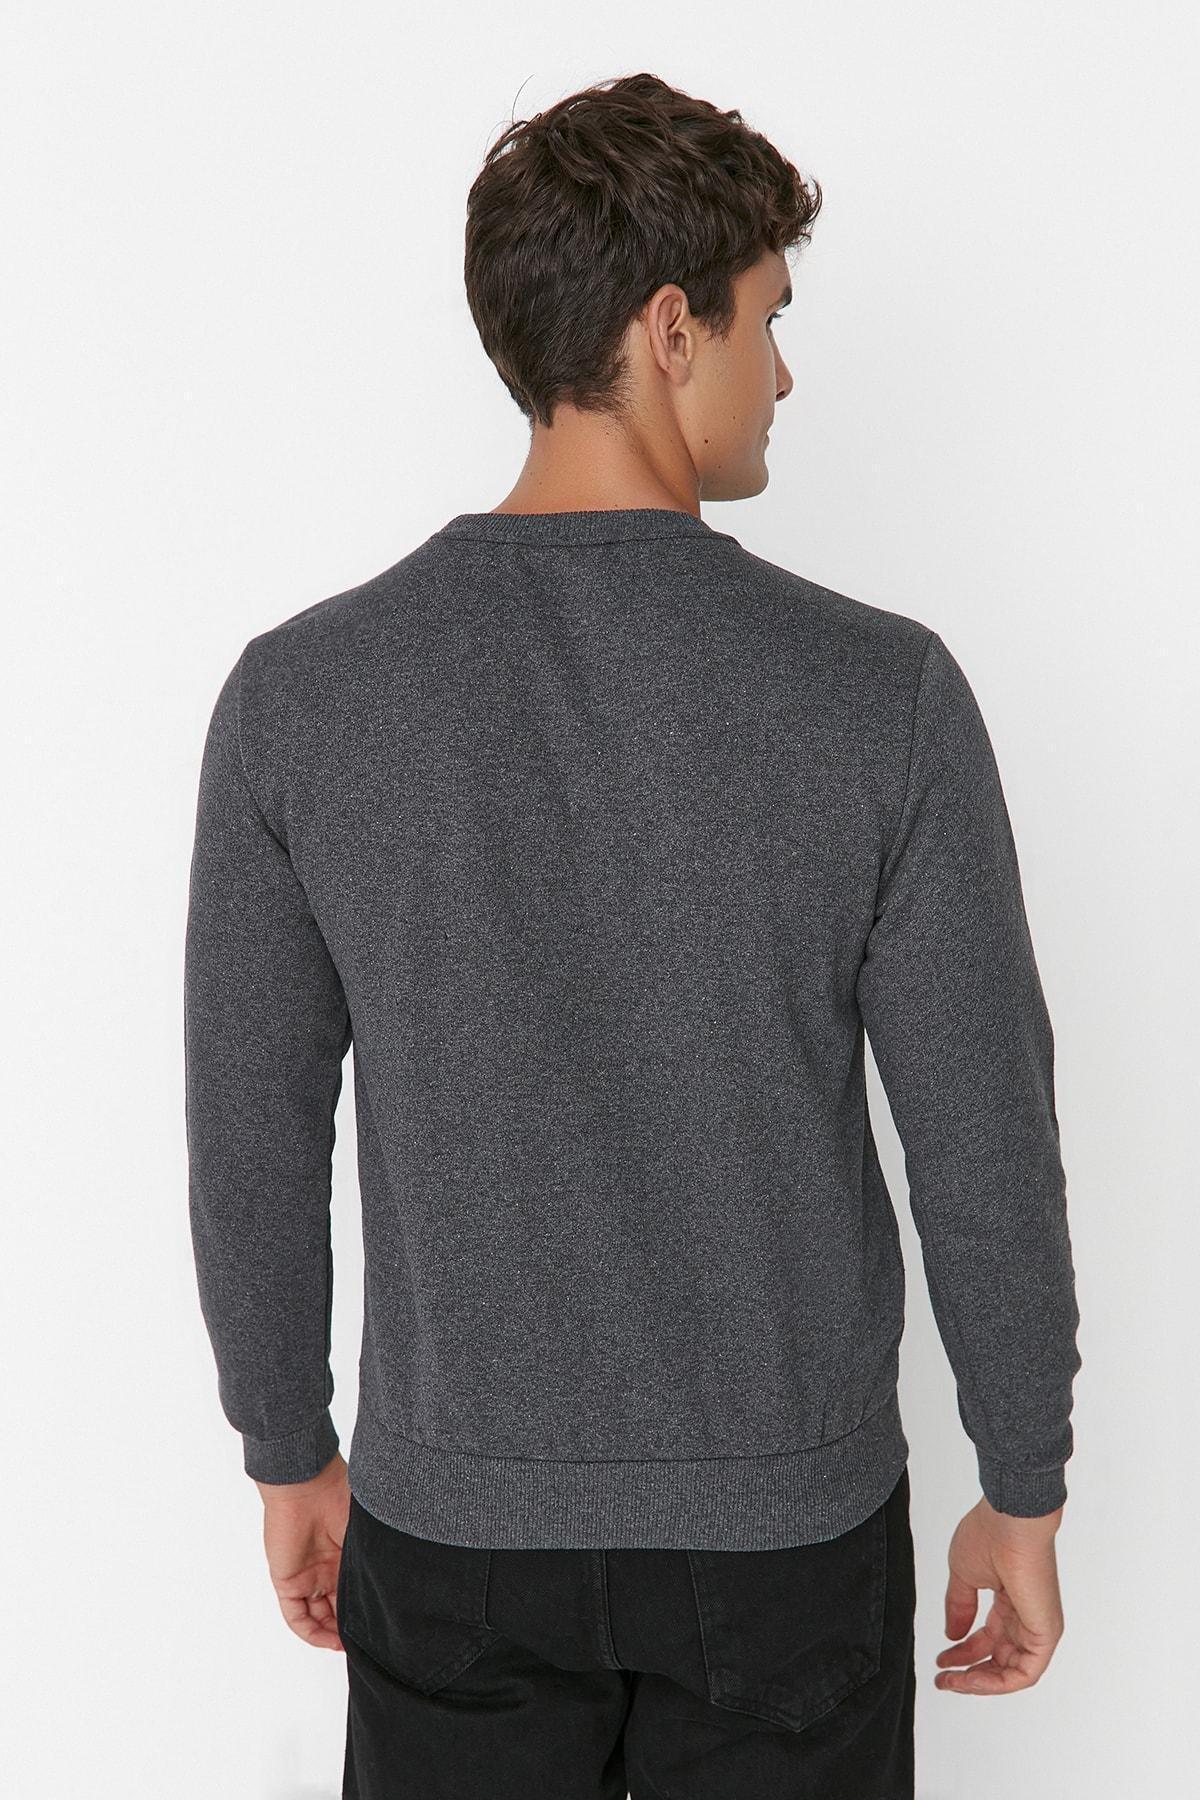 Trendyol - Grey Regular Crew Neck Sweatshirt